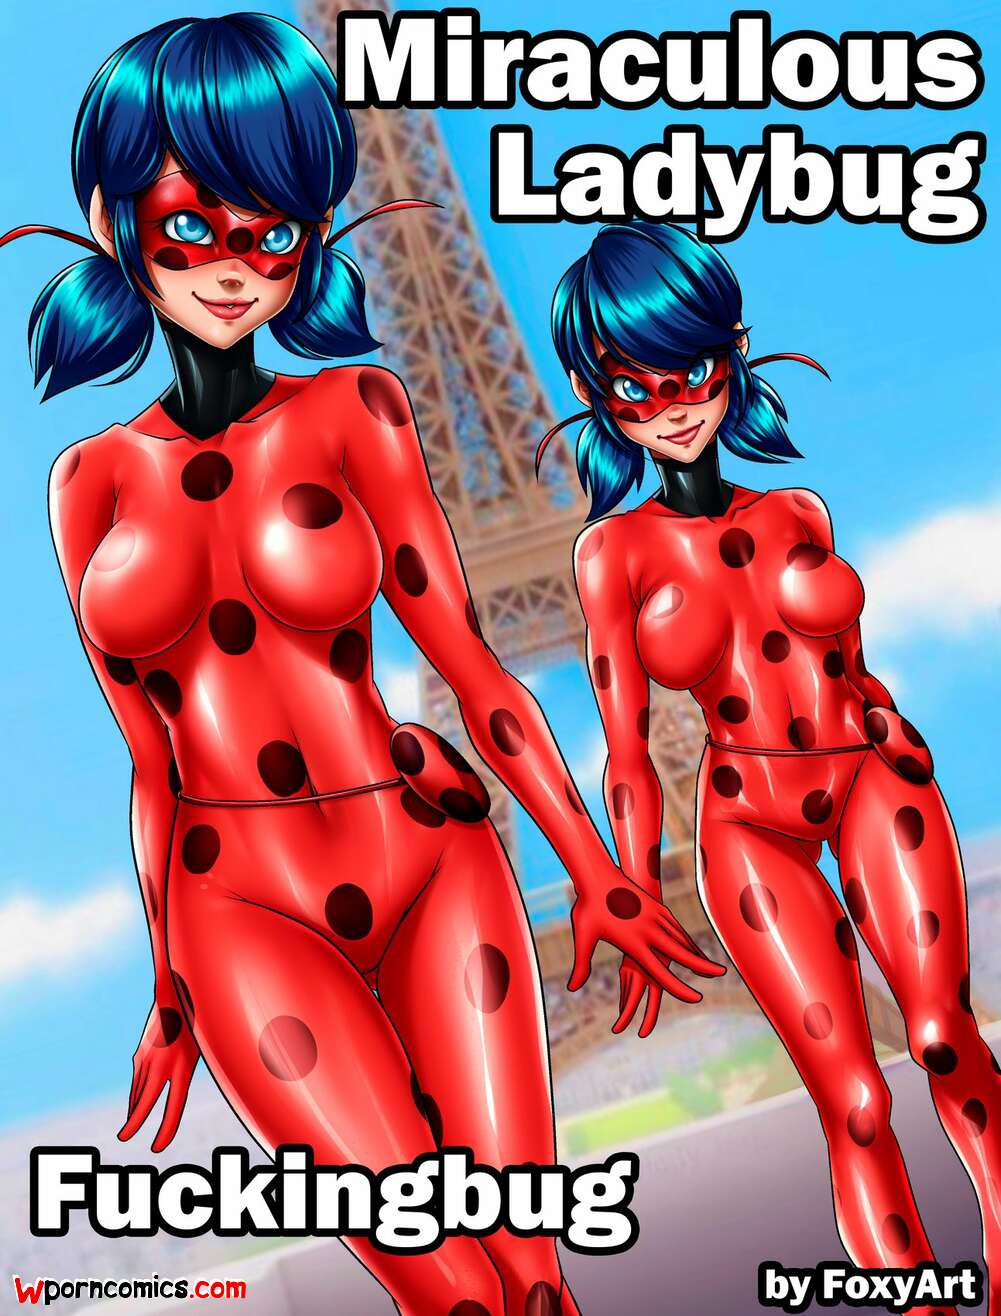 Mirculas lady bug porn comics